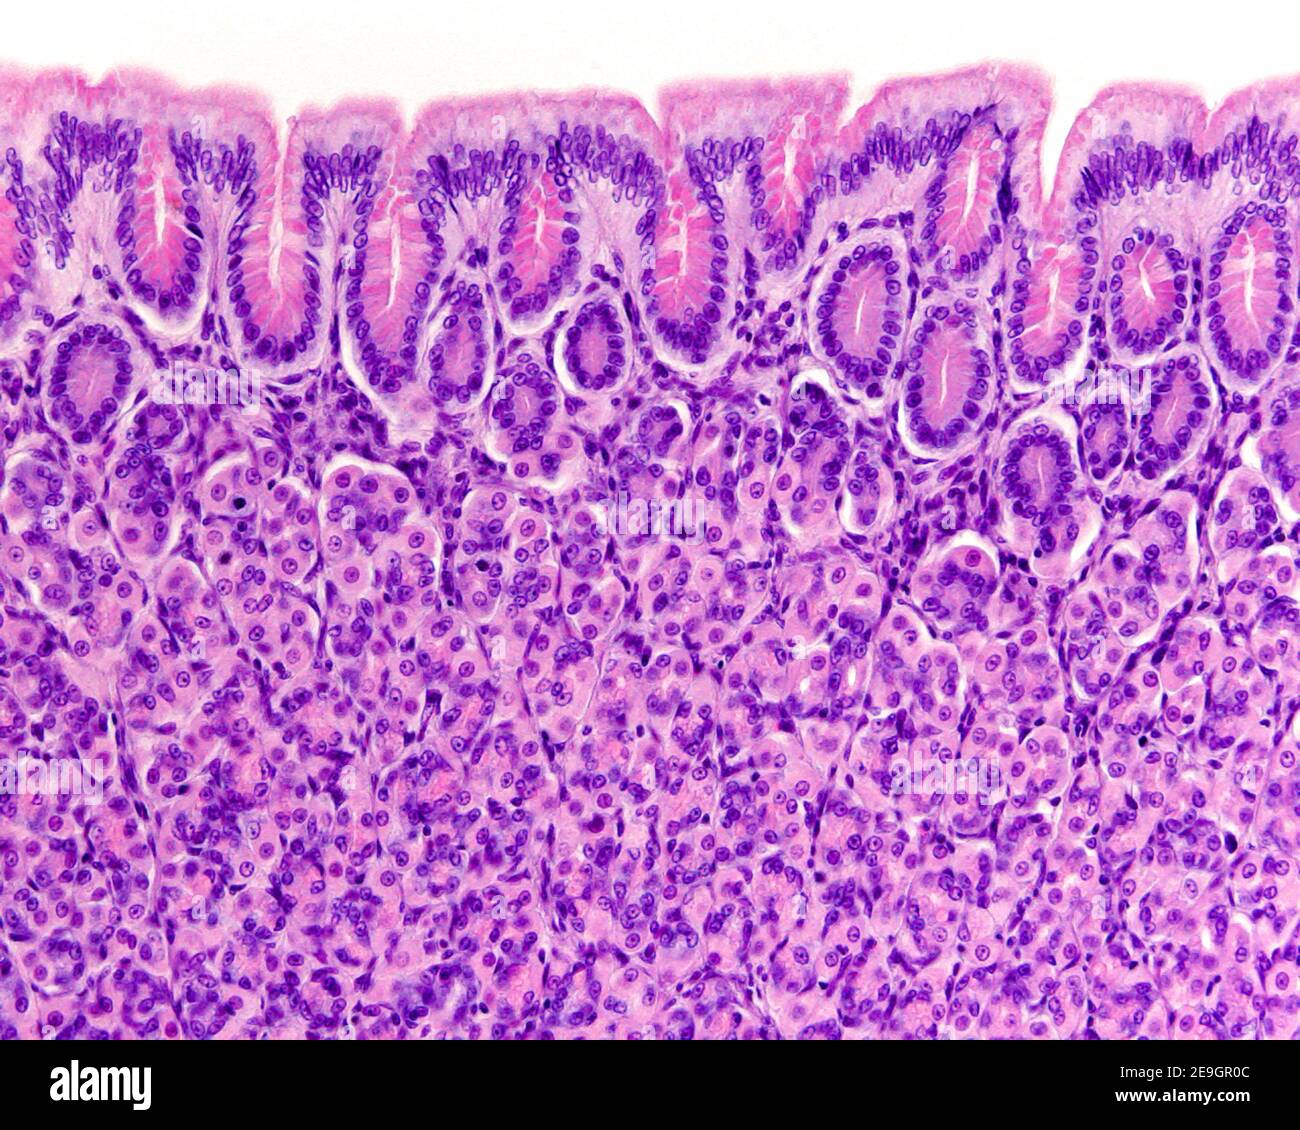 Magenschleimhaut, die das Schleimepithel der Oberfläche, die Magengruben und die Funddrüsen mit vielen rosa Parietalzellen zeigt Stockfoto